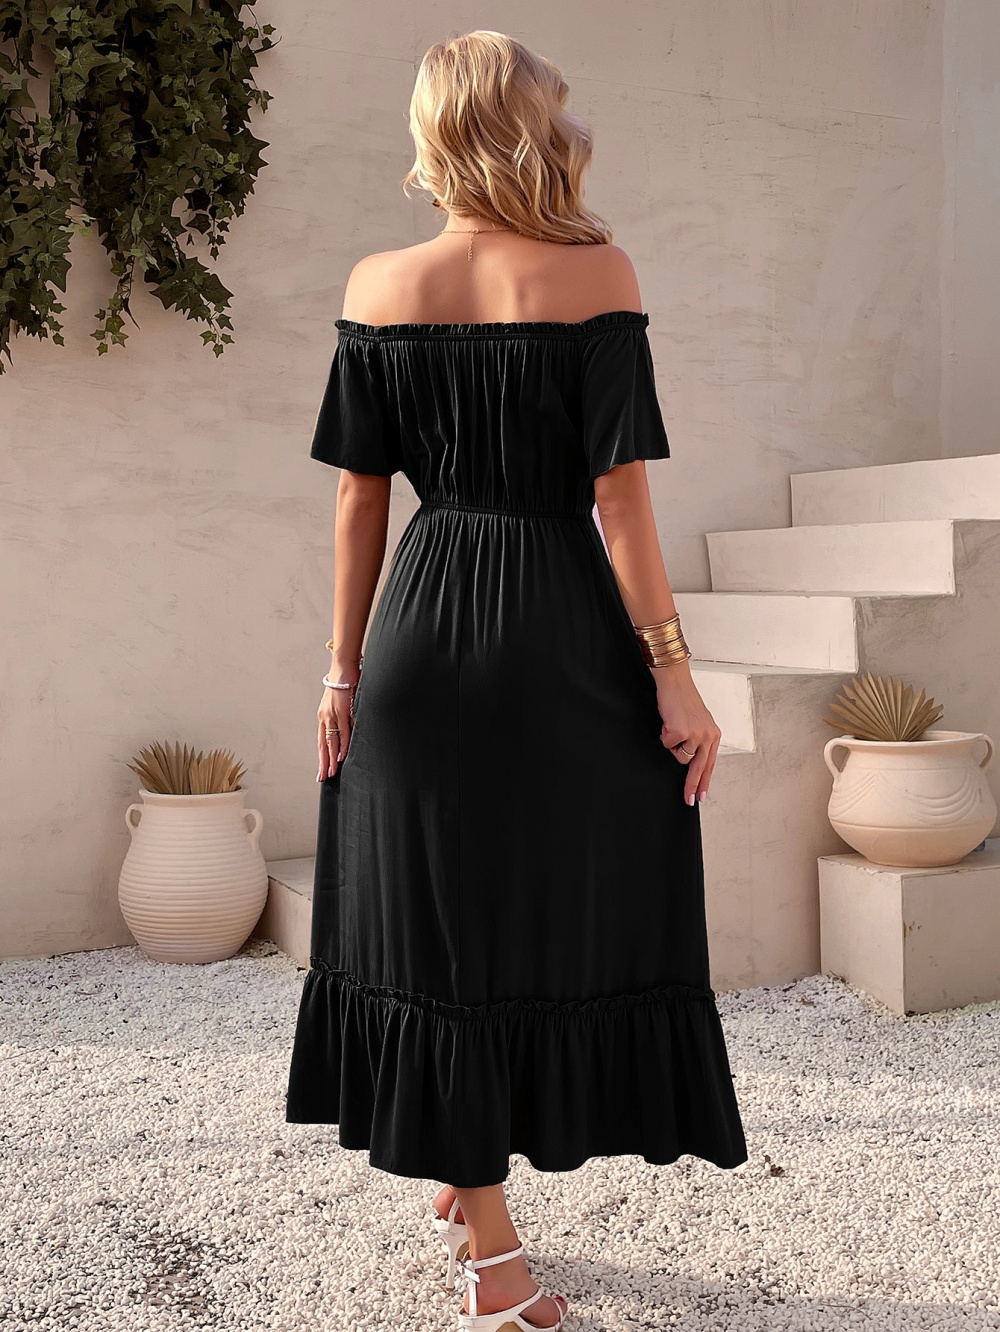 Big skirt fashion elegant flat shoulder dress